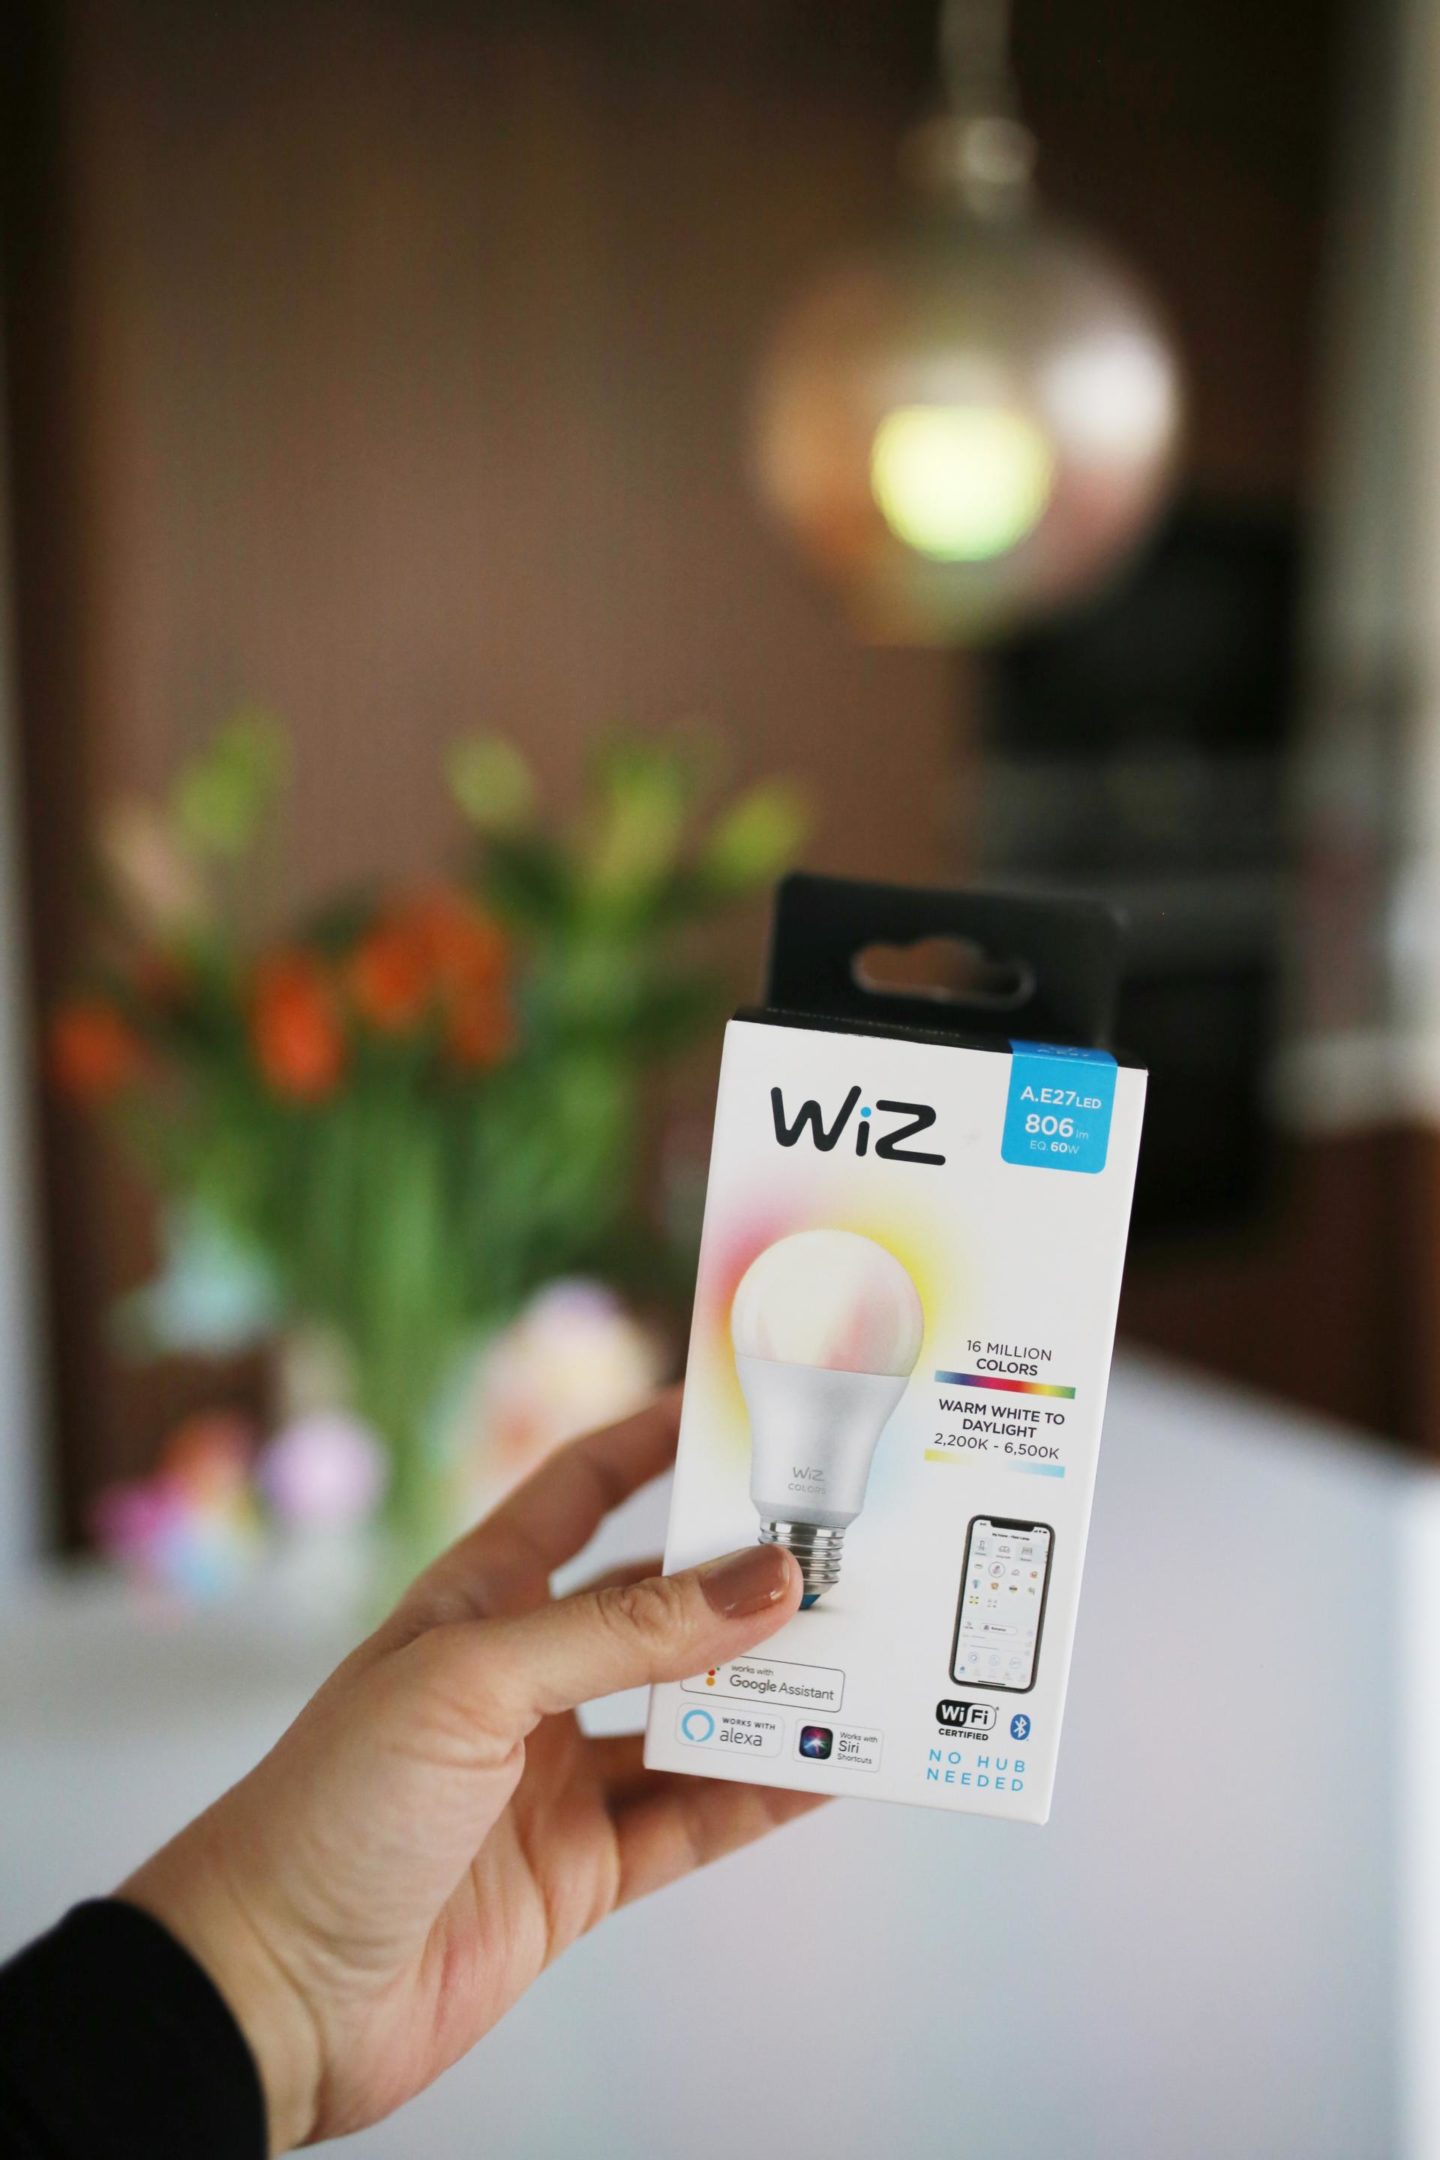 Mit WiZ ist bei uns ein drahtloses LED-Beleuchtungssystem in unsere Küche eingezogen, das mit Hilfe von WLAN und der WiZ App verbunden und über Smartphone, Tablet oder der WiZMote Fernbedienung gesteuert wird. Jeder Raum kann einzeln angepasst werden, um zu bestimmen, welche Lampe wann und in welchem Modus leuchten soll.